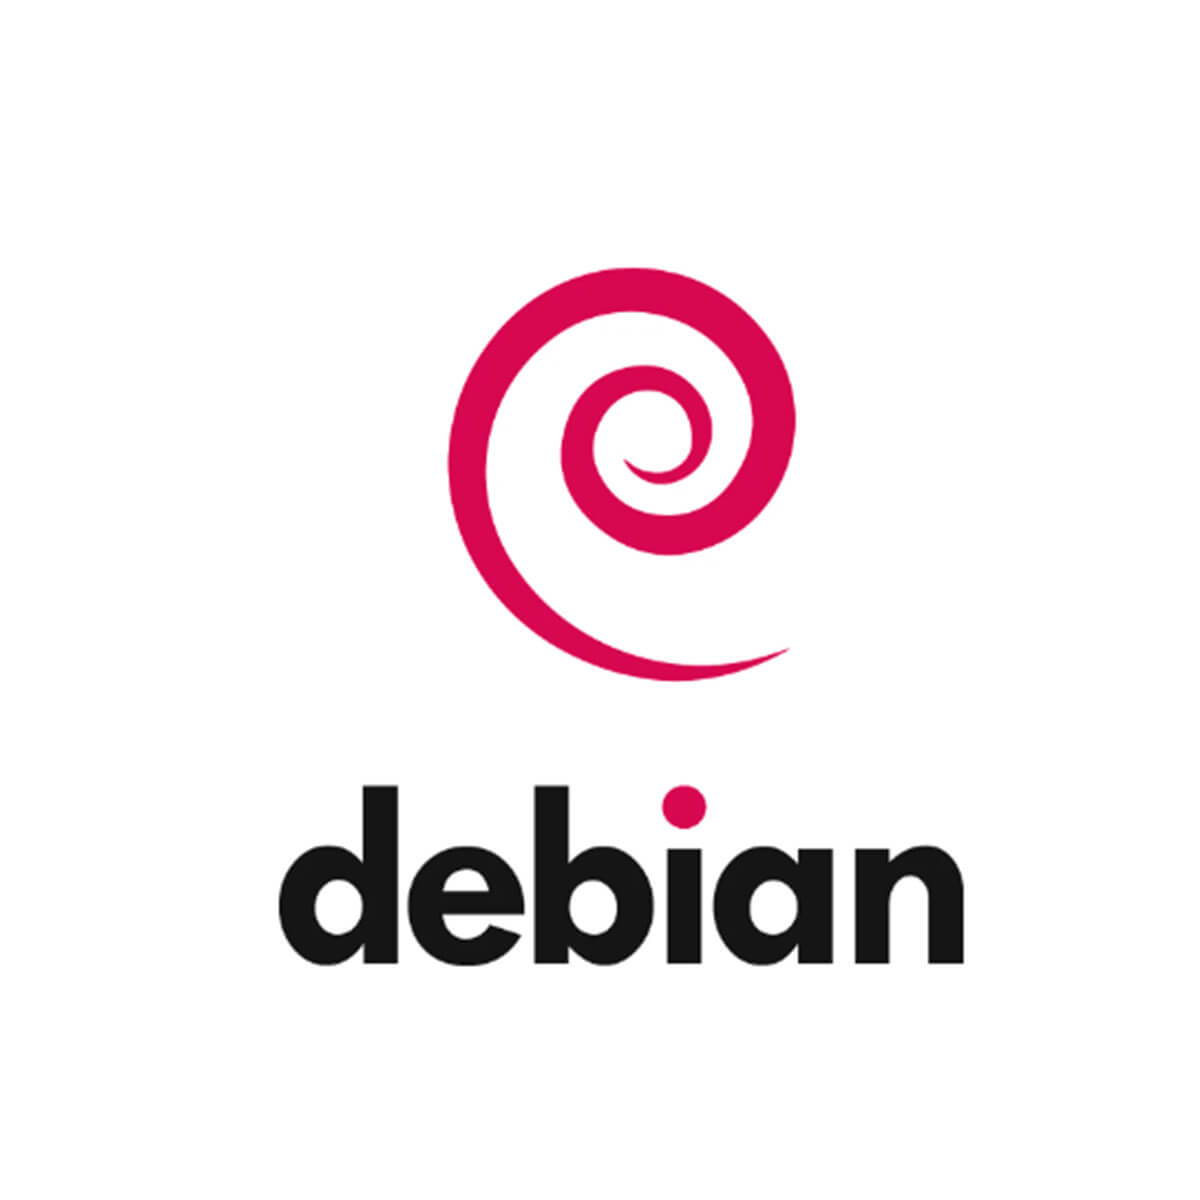 debian Media4now | Webdevelopment voor webdesign en hosting✅ , Webdesign, webdesign Tiel, Media4now, Webdevelopment Tiel, Seo optimalisatie